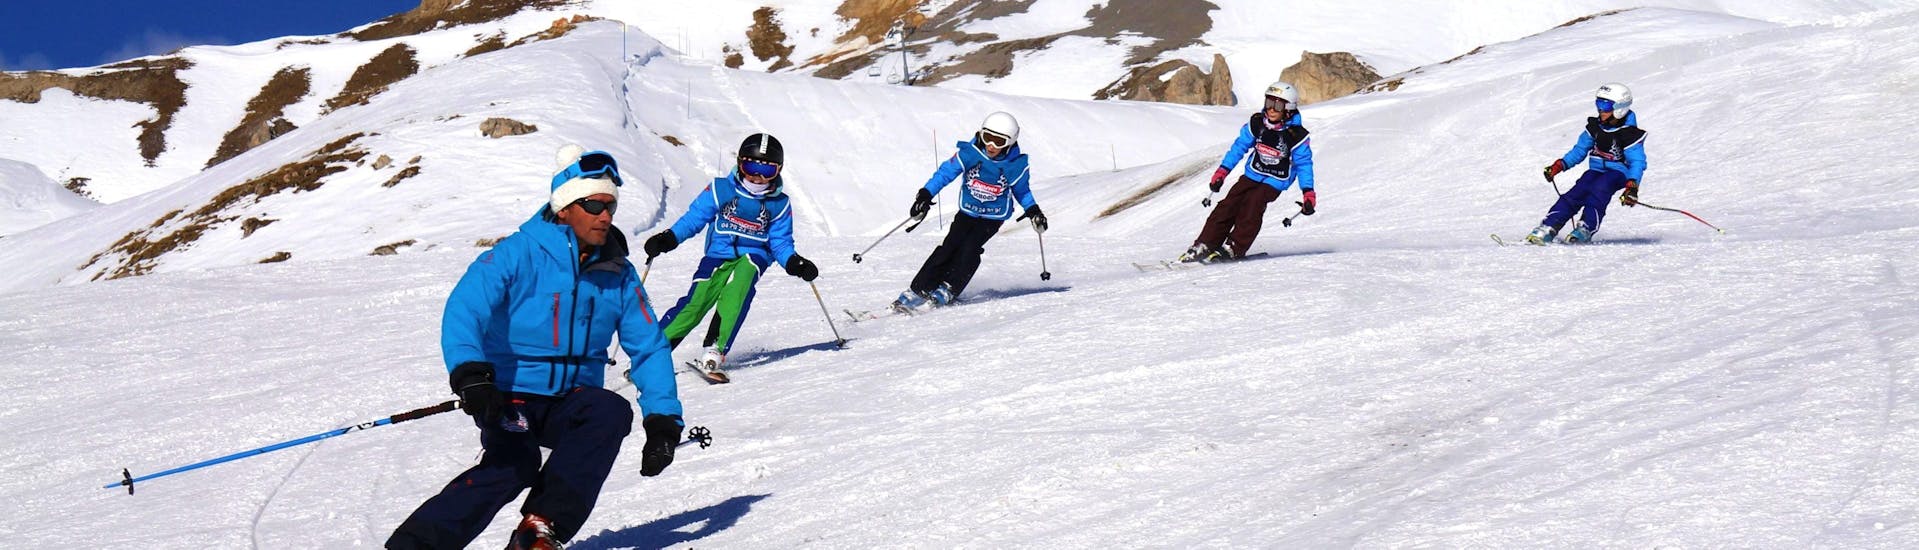 Los jóvenes esquiadores siguen a su instructor de la escuela de esquí Snocool Tignes en una pendiente nevada, durante sus clases de esquí para niños "Pop 6" (10-17 años) - Avanzado.